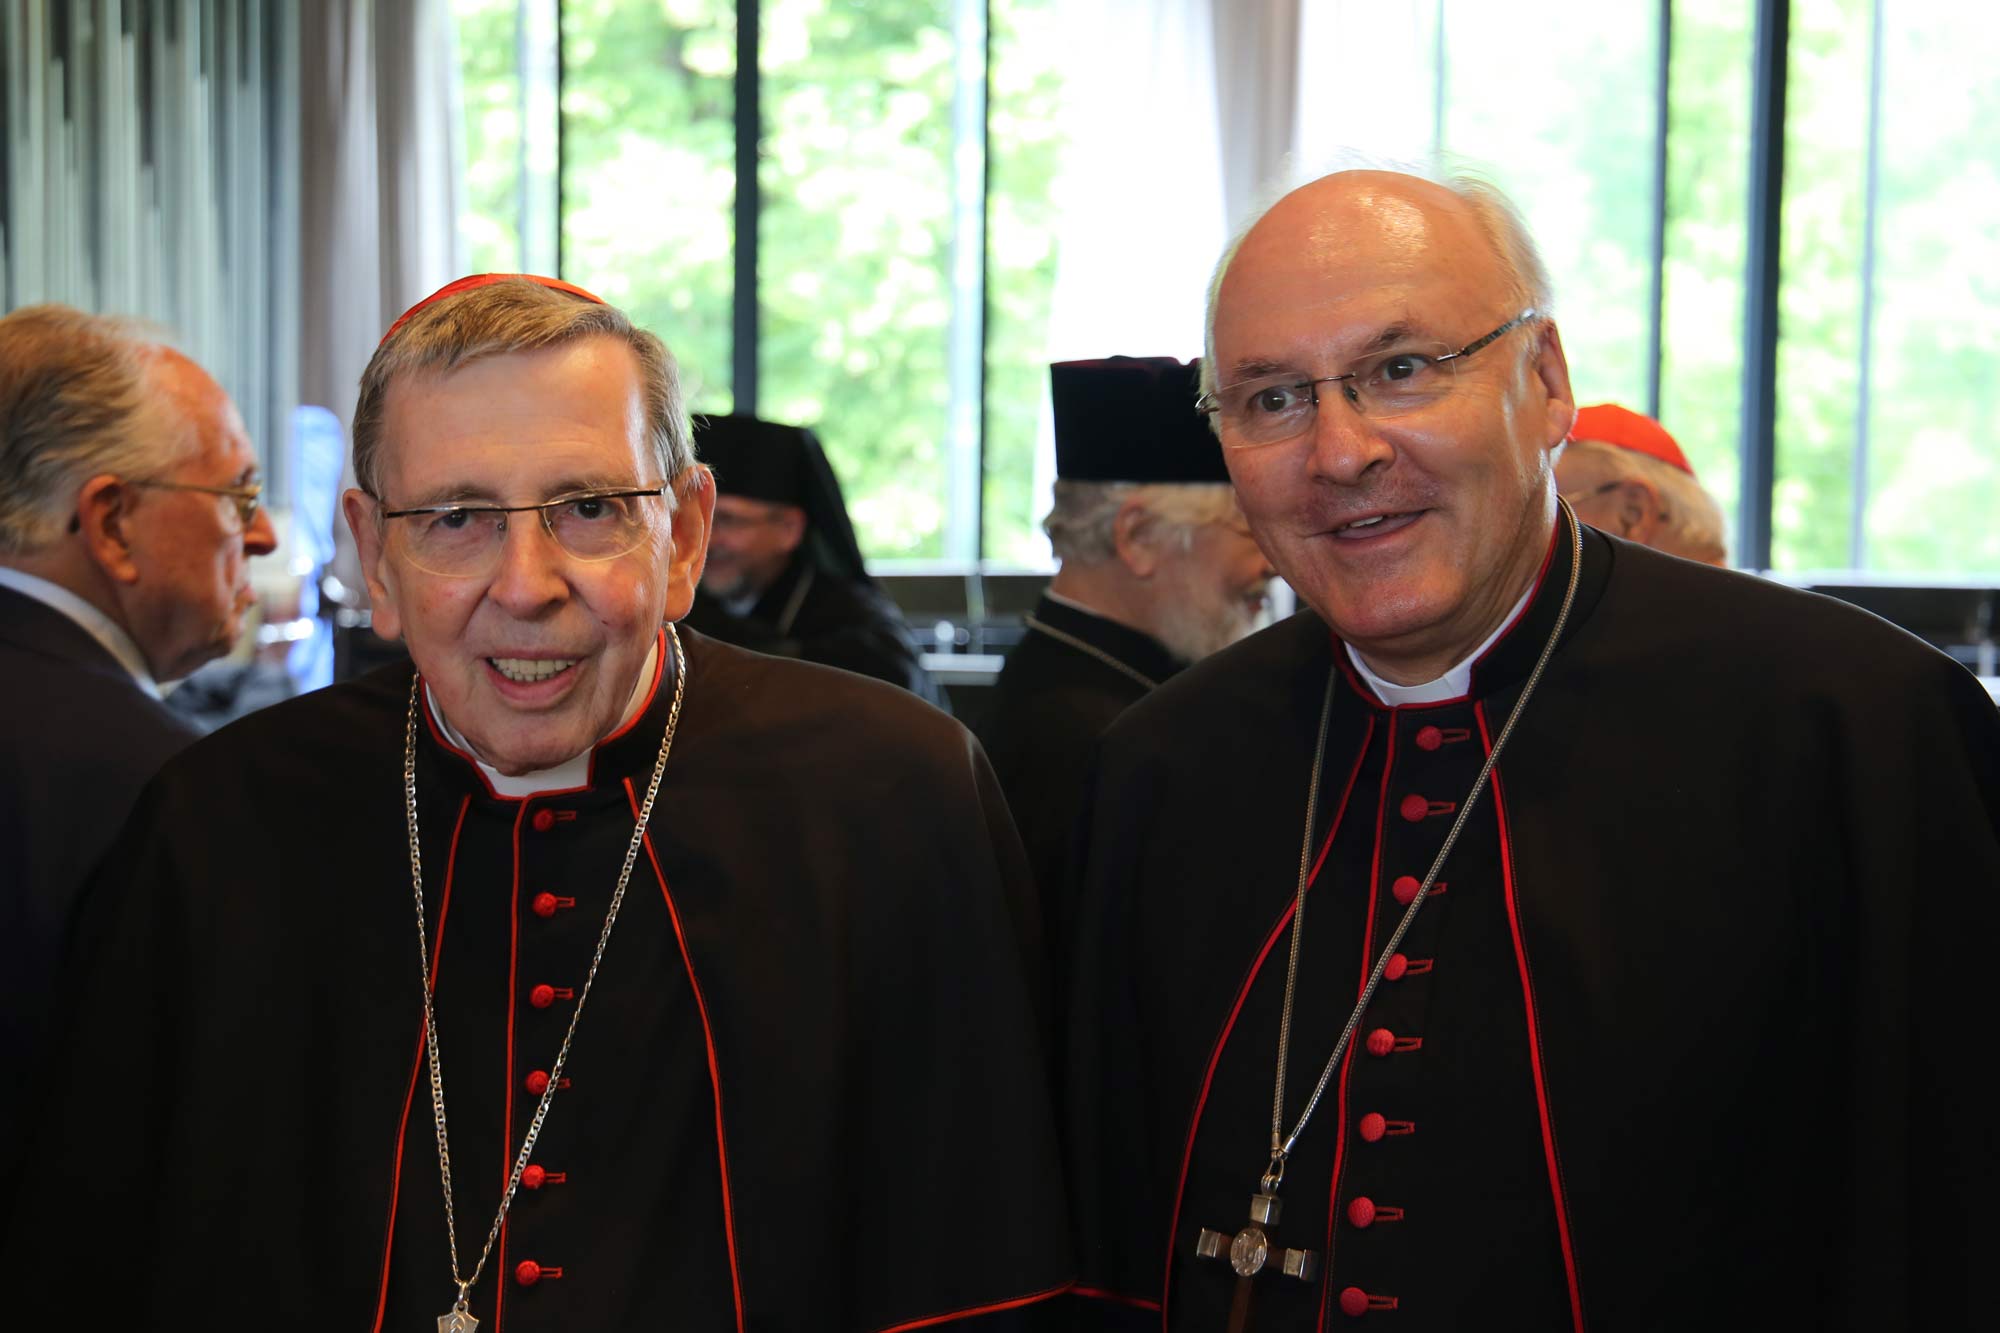 Kardinal und Bischof lachen in die Kamera